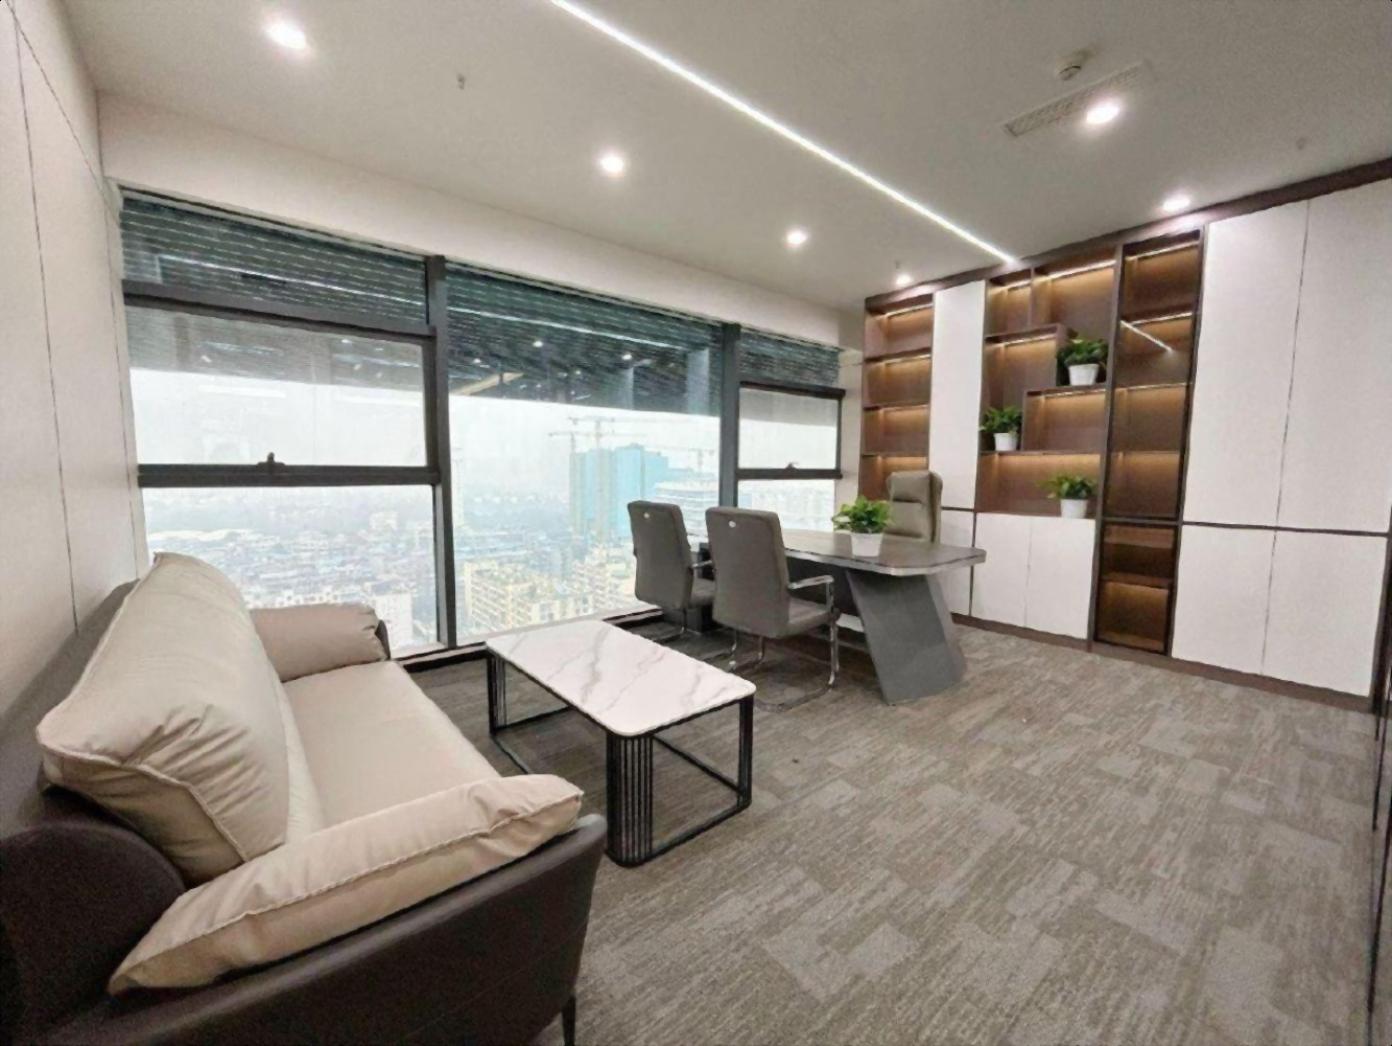 南山科技园深圳湾科技生态园500平精装办公室